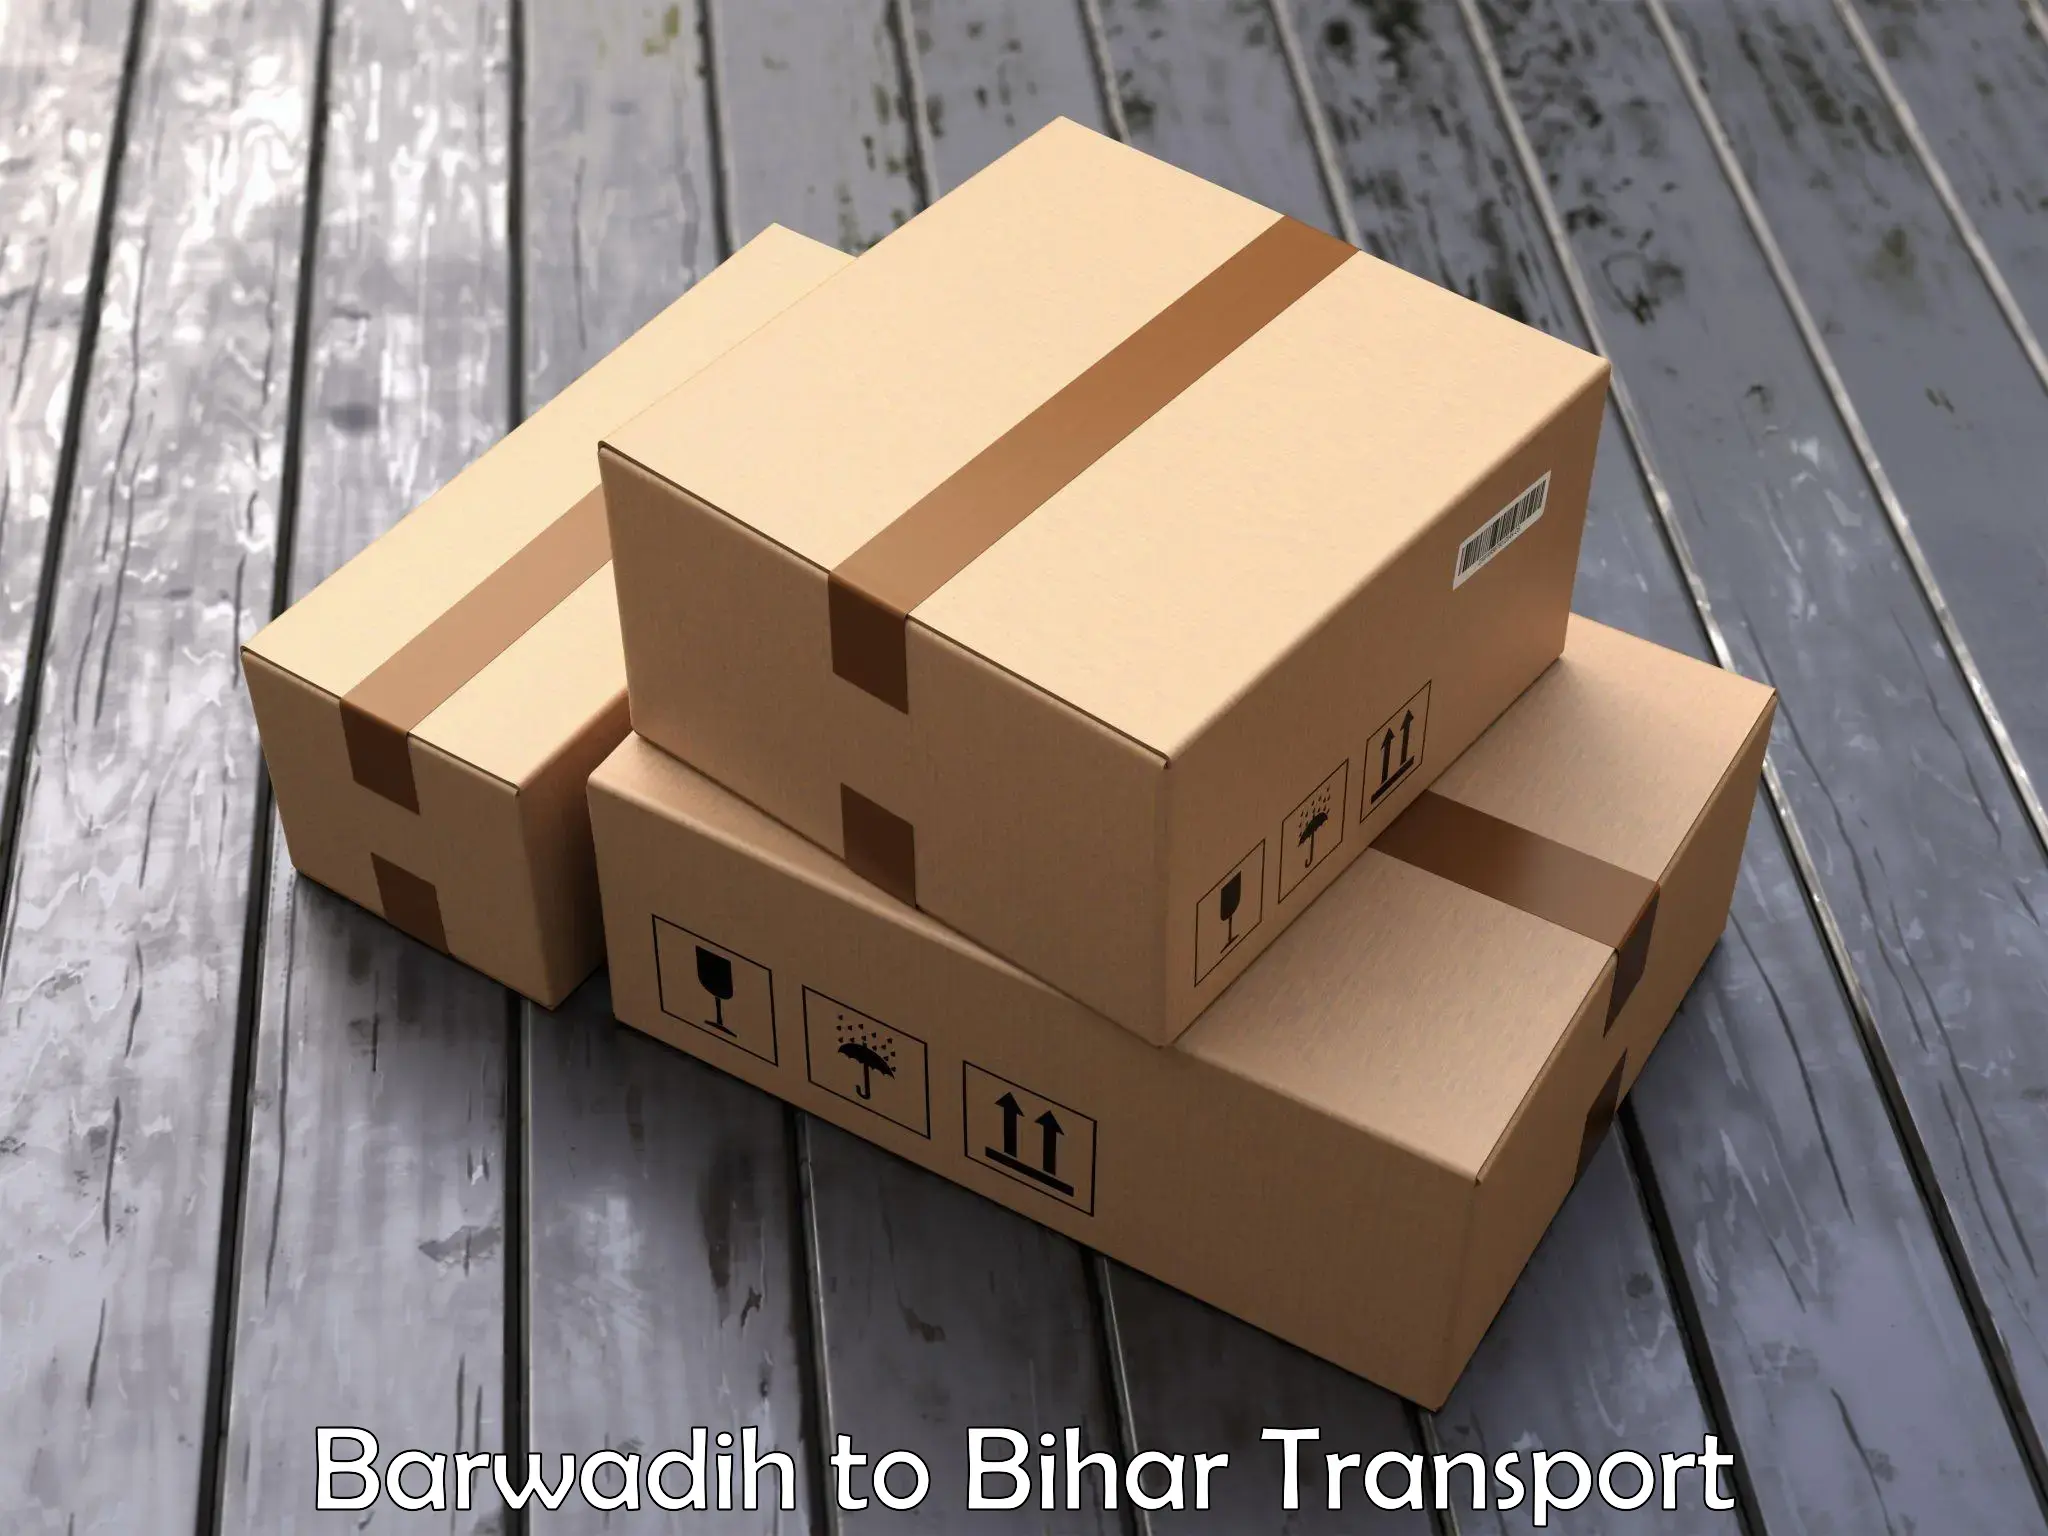 Truck transport companies in India Barwadih to Piro